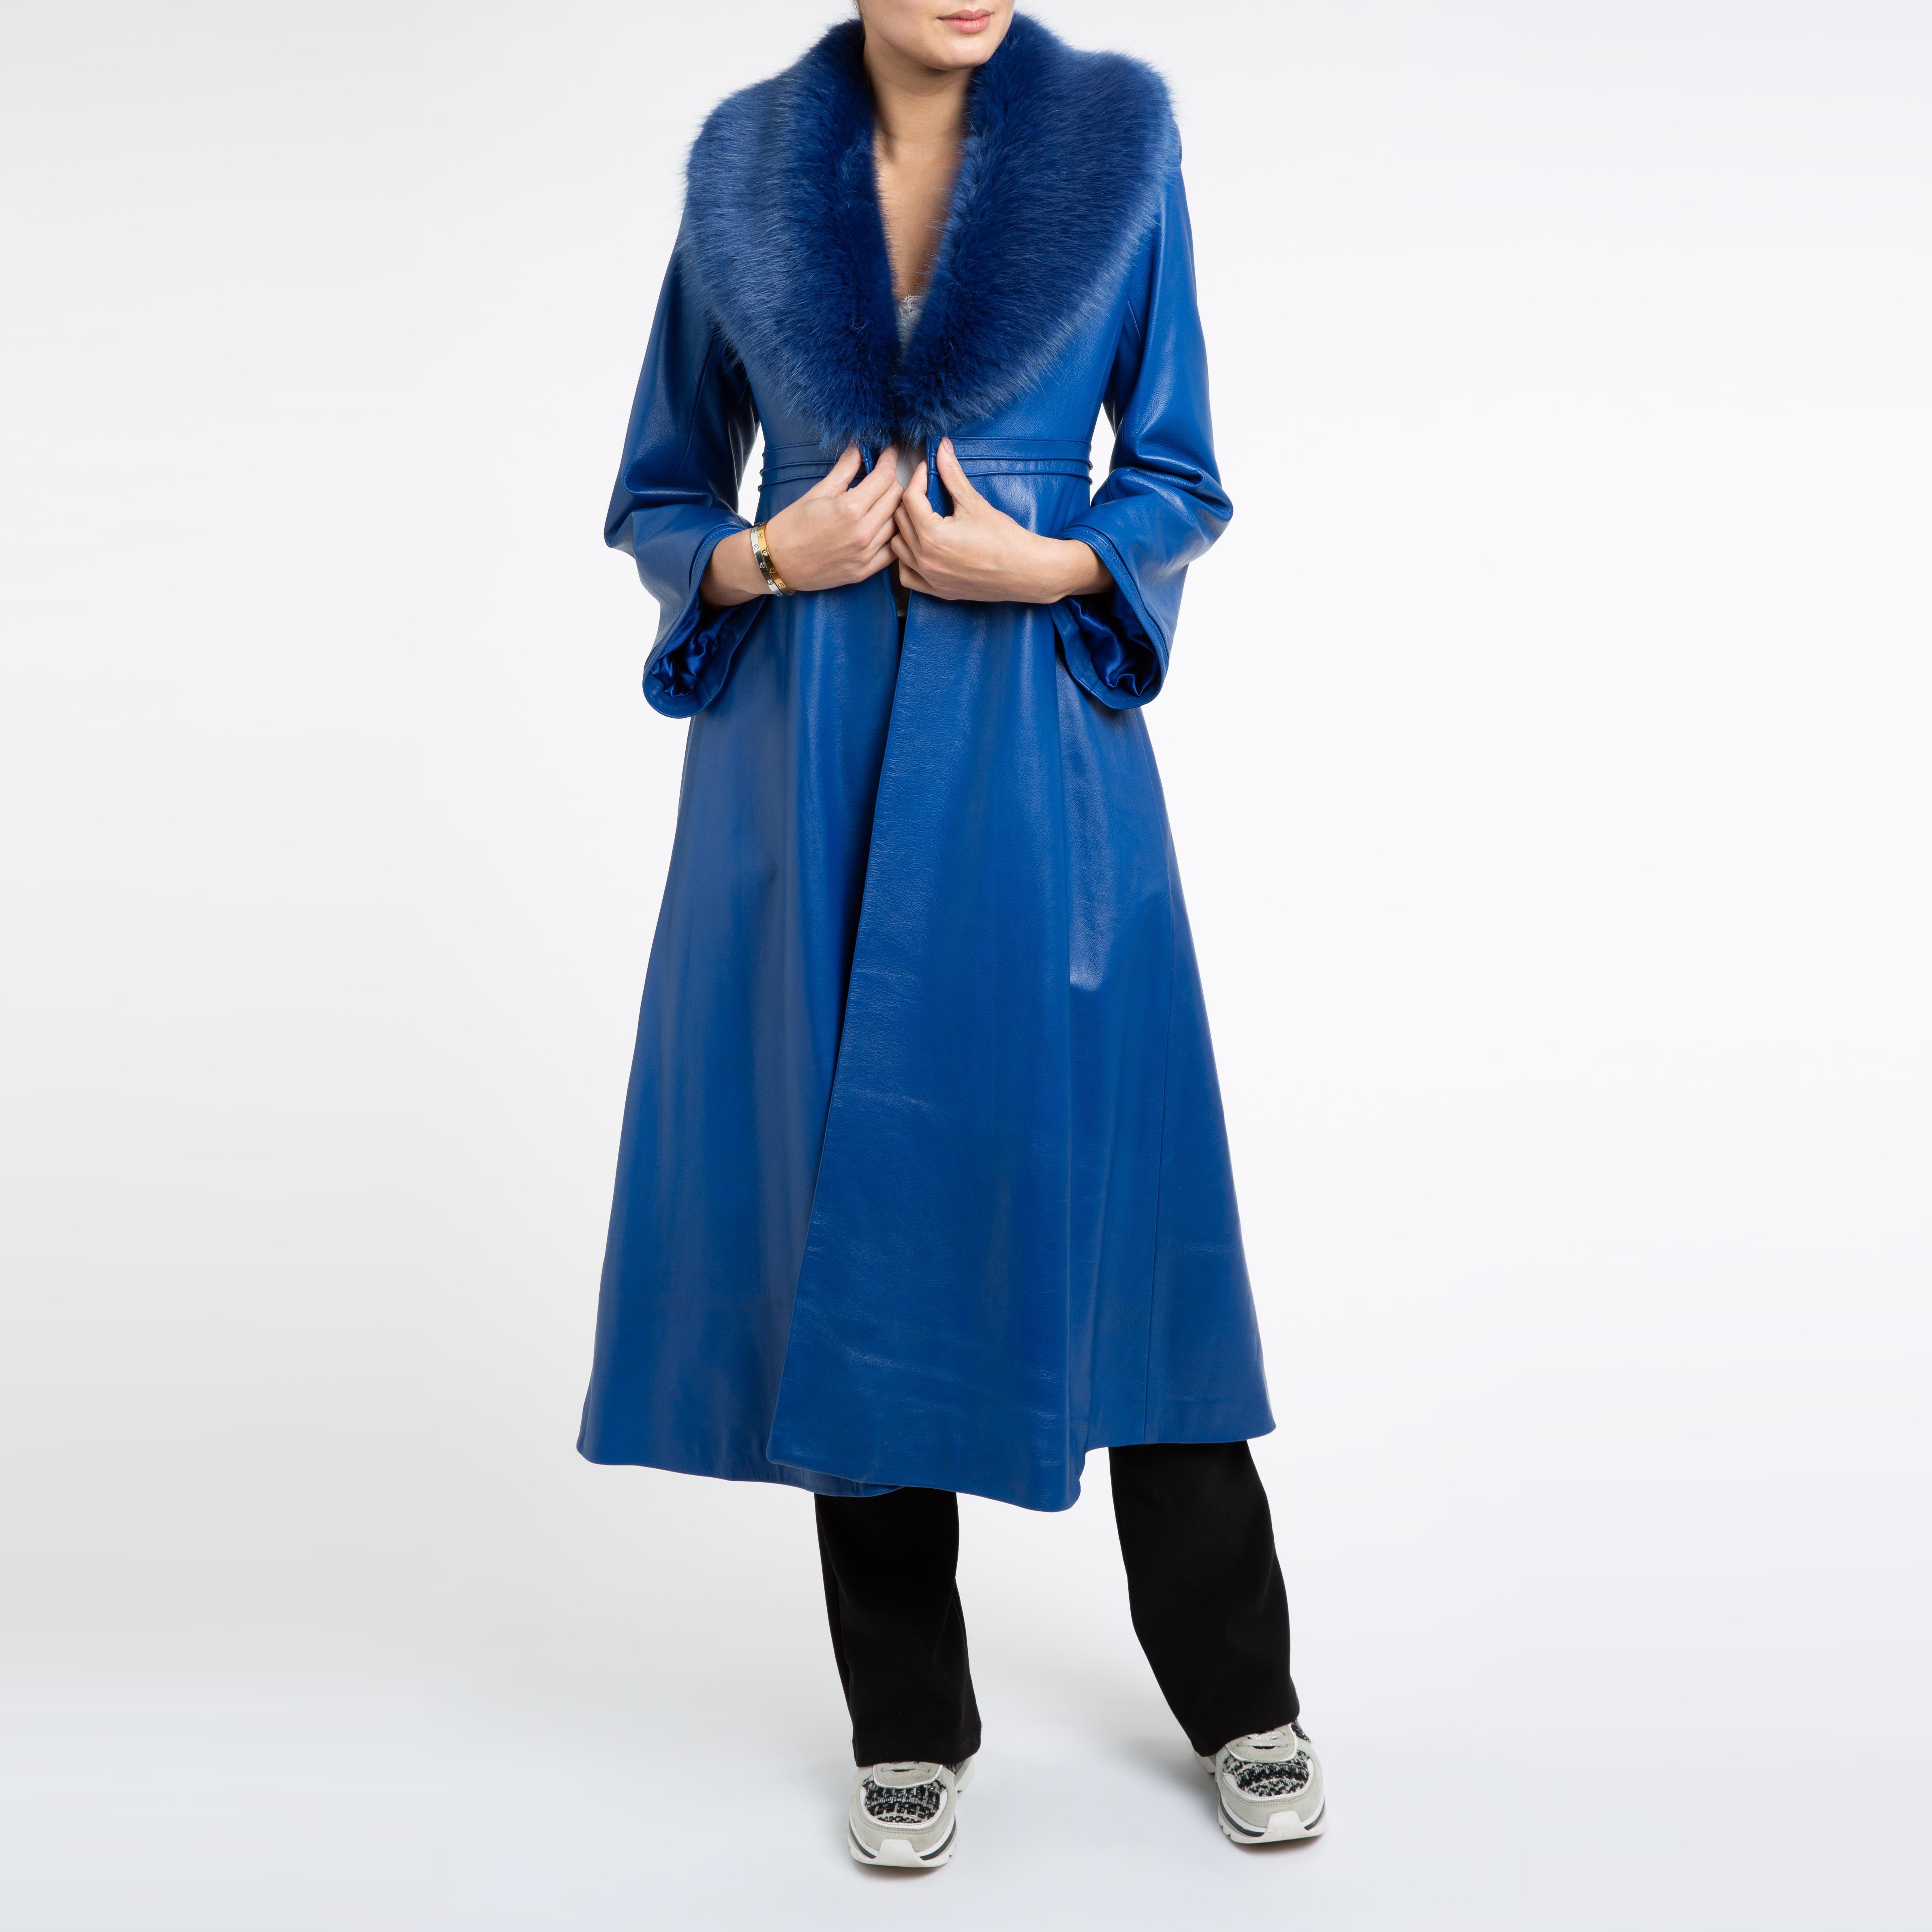 Verheyen London Edward Leather Coat in Blue with Faux Fur - Size uk 8  For Sale 3